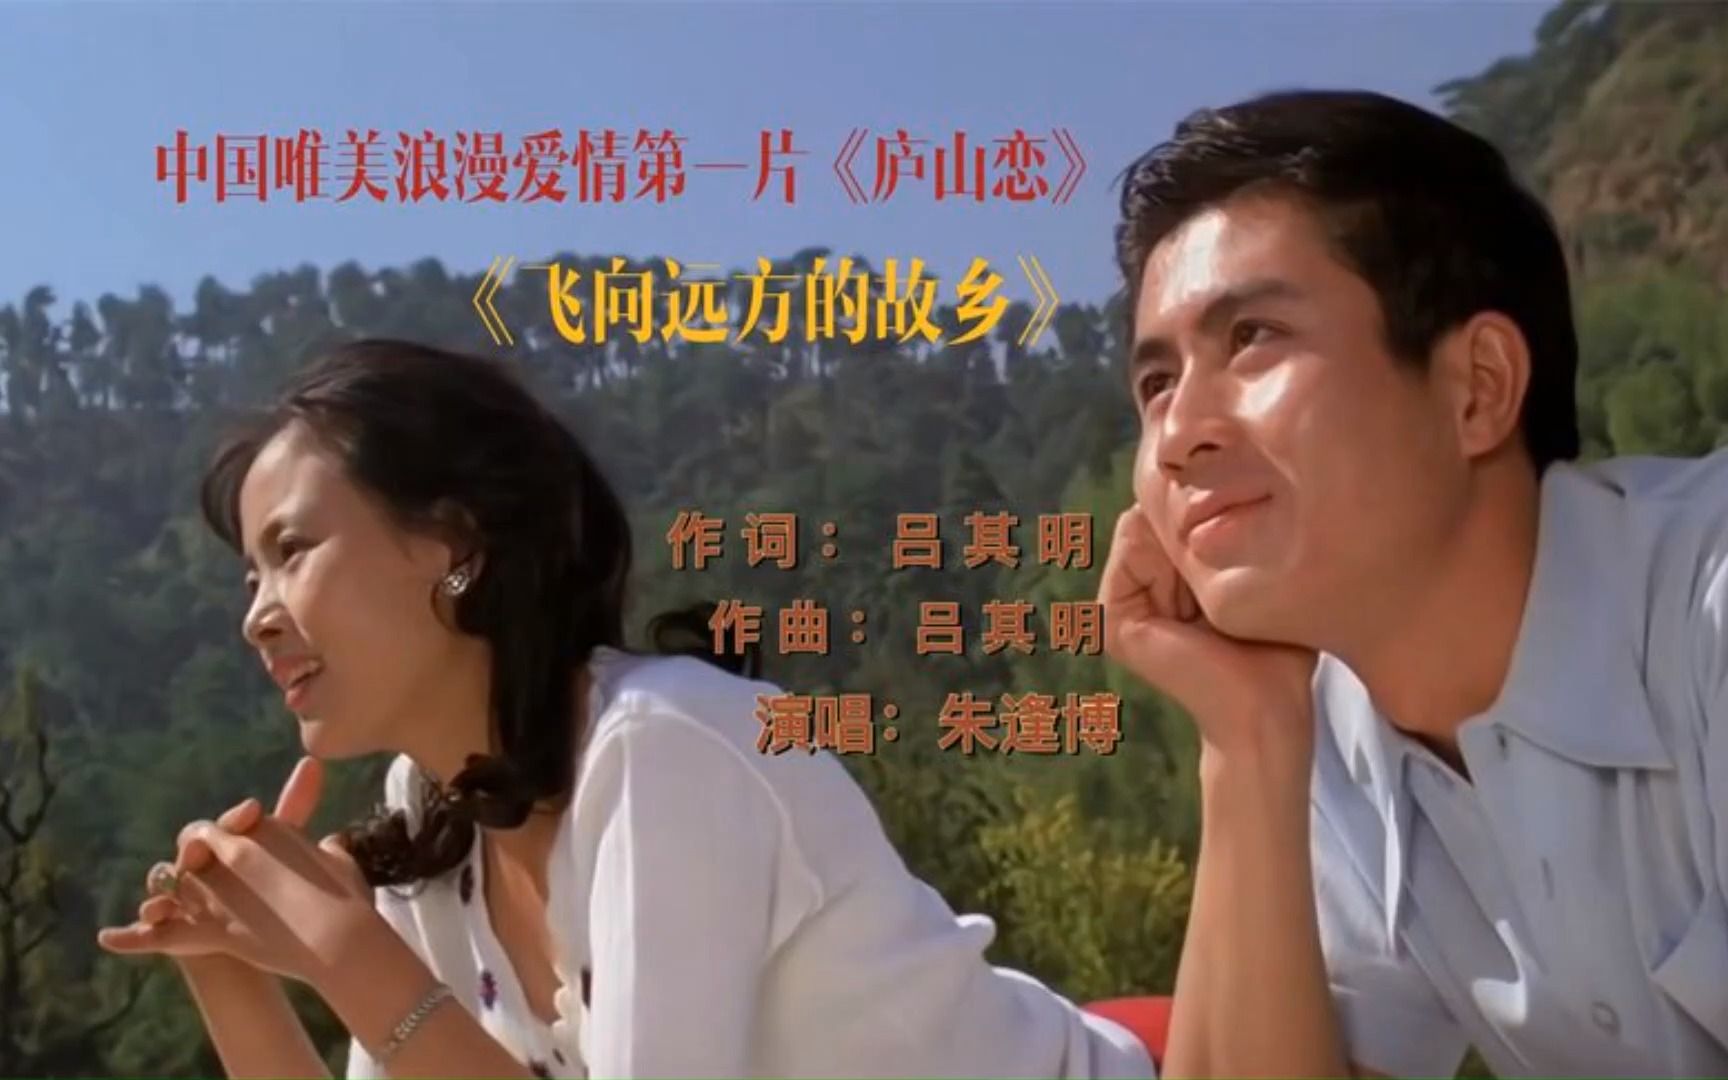 八十年代唯美浪漫爱情电影《庐山恋》插曲《飞向远方的故乡》